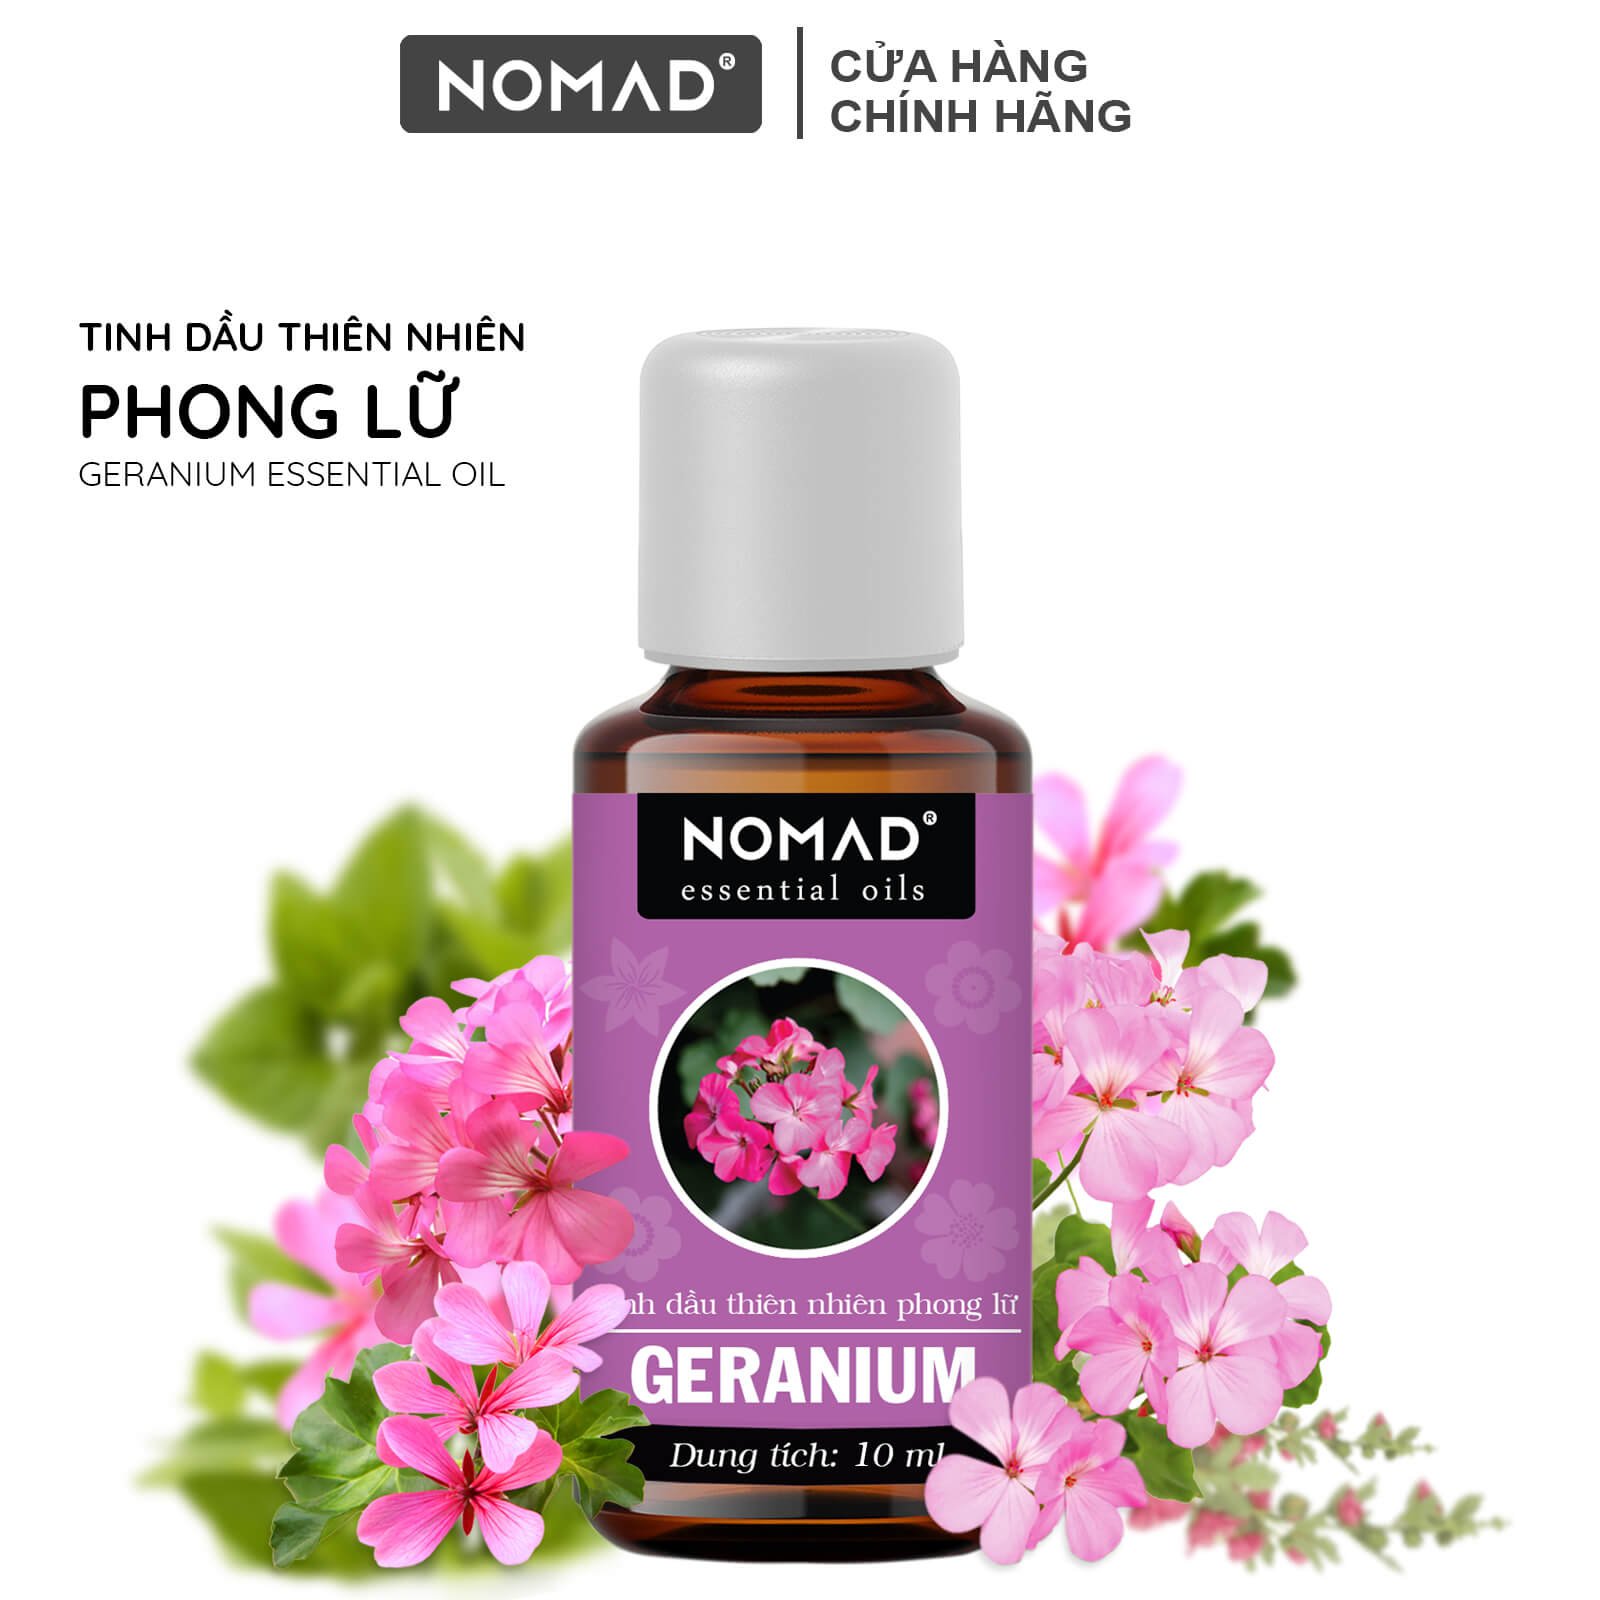 Tinh Dầu Thiên Nhiên Hương Phong Lữ Nomad Essential Oils Geranium xông thơm phòng, khử mùi, thanh lọc không khí